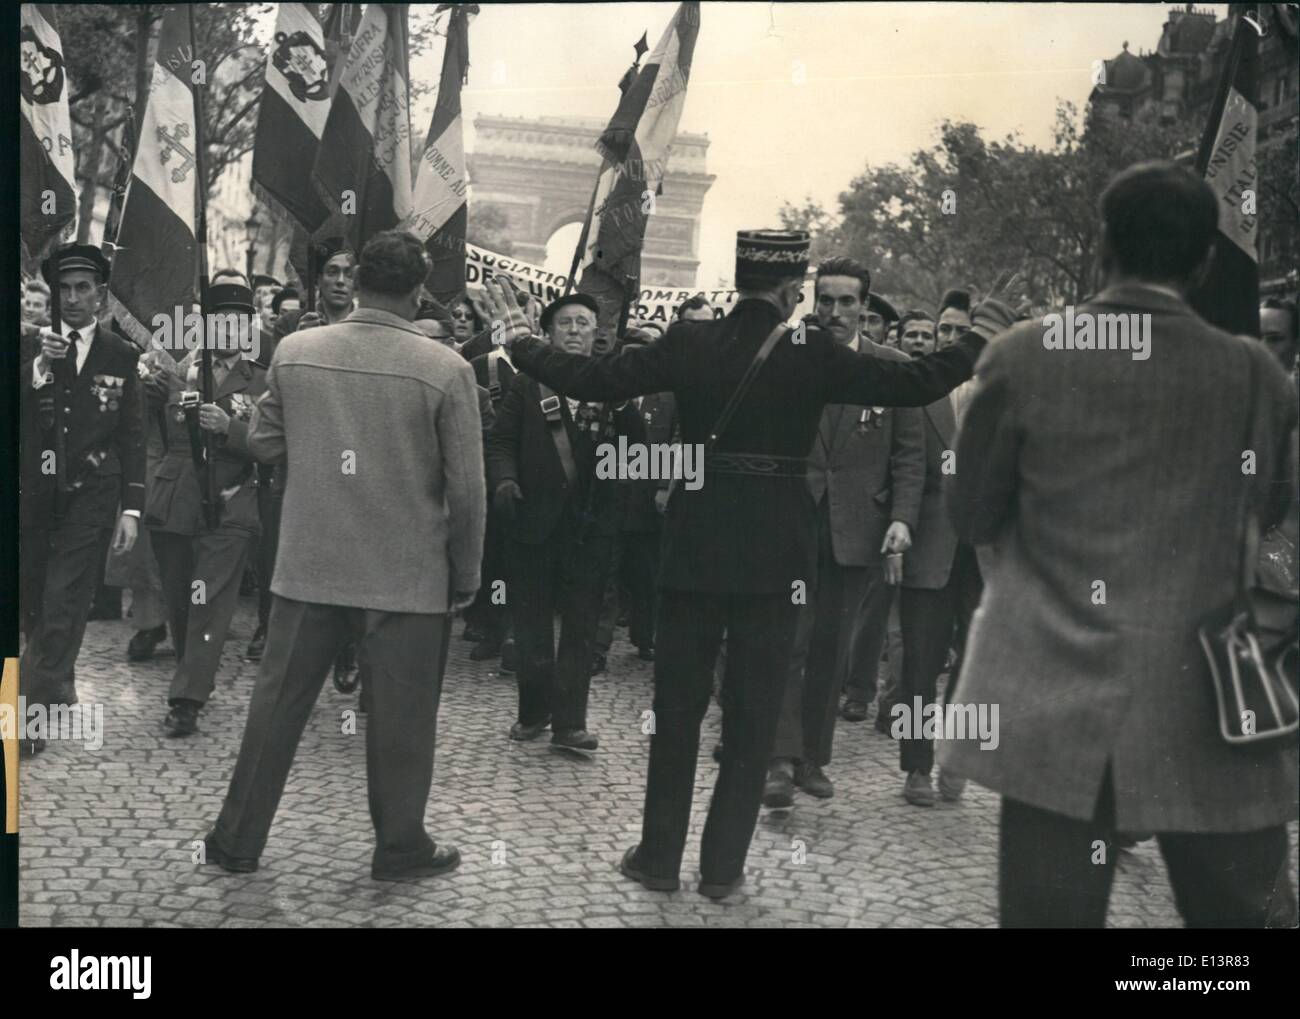 27 mar 2012 - Polizia combatte Parigi Mobs: una folla di 600 nazionalista swarmed francesi lungo gli Champs Elysees ieri sera e ho cercato di tempesta l'Assemblea nazionale francese. La foto mostra un alto rango funzionario di polizia cerca di calmare la folla. Foto Stock